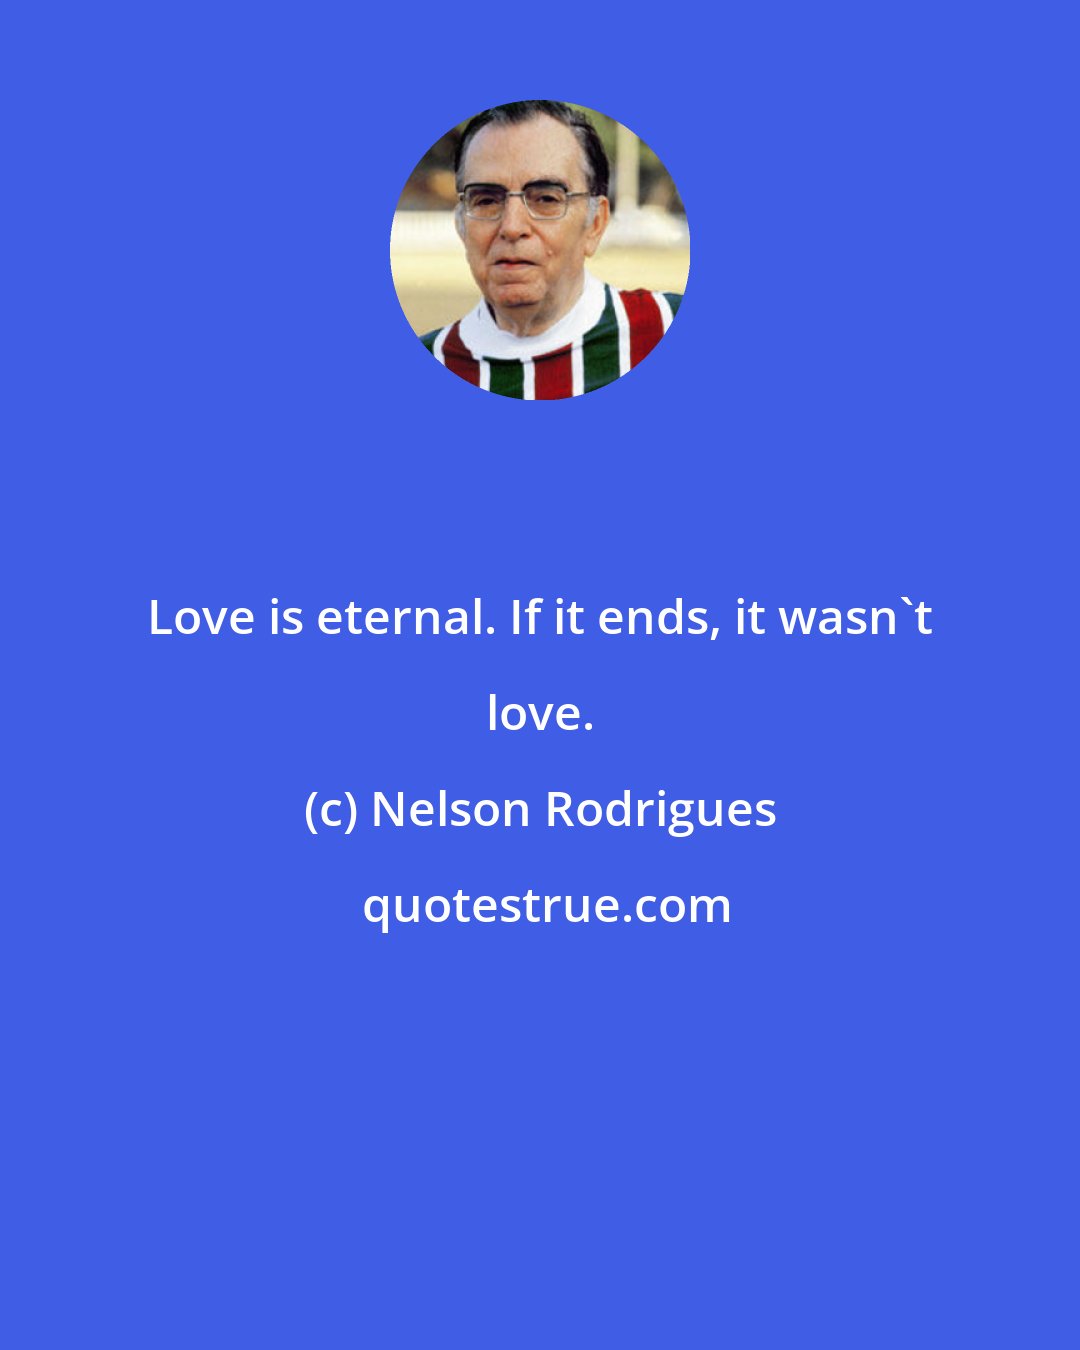 Nelson Rodrigues: Love is eternal. If it ends, it wasn't love.